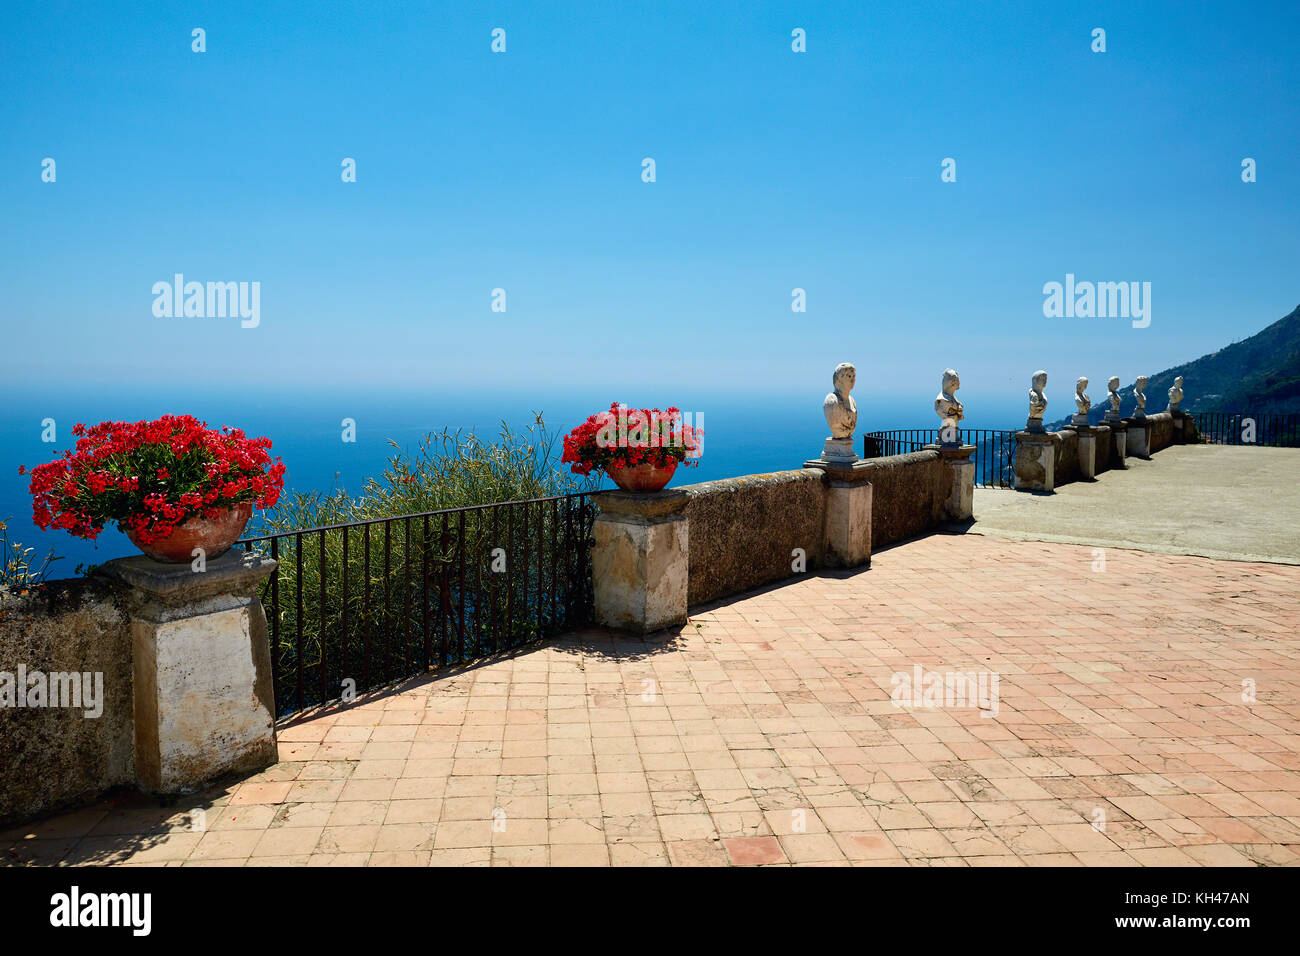 Terrasse der Unendlichkeit mit Blumen und Topfpflanzen Statuen, Villa Cimbrone, Ravello, Kampanien, Italien. Stockfoto